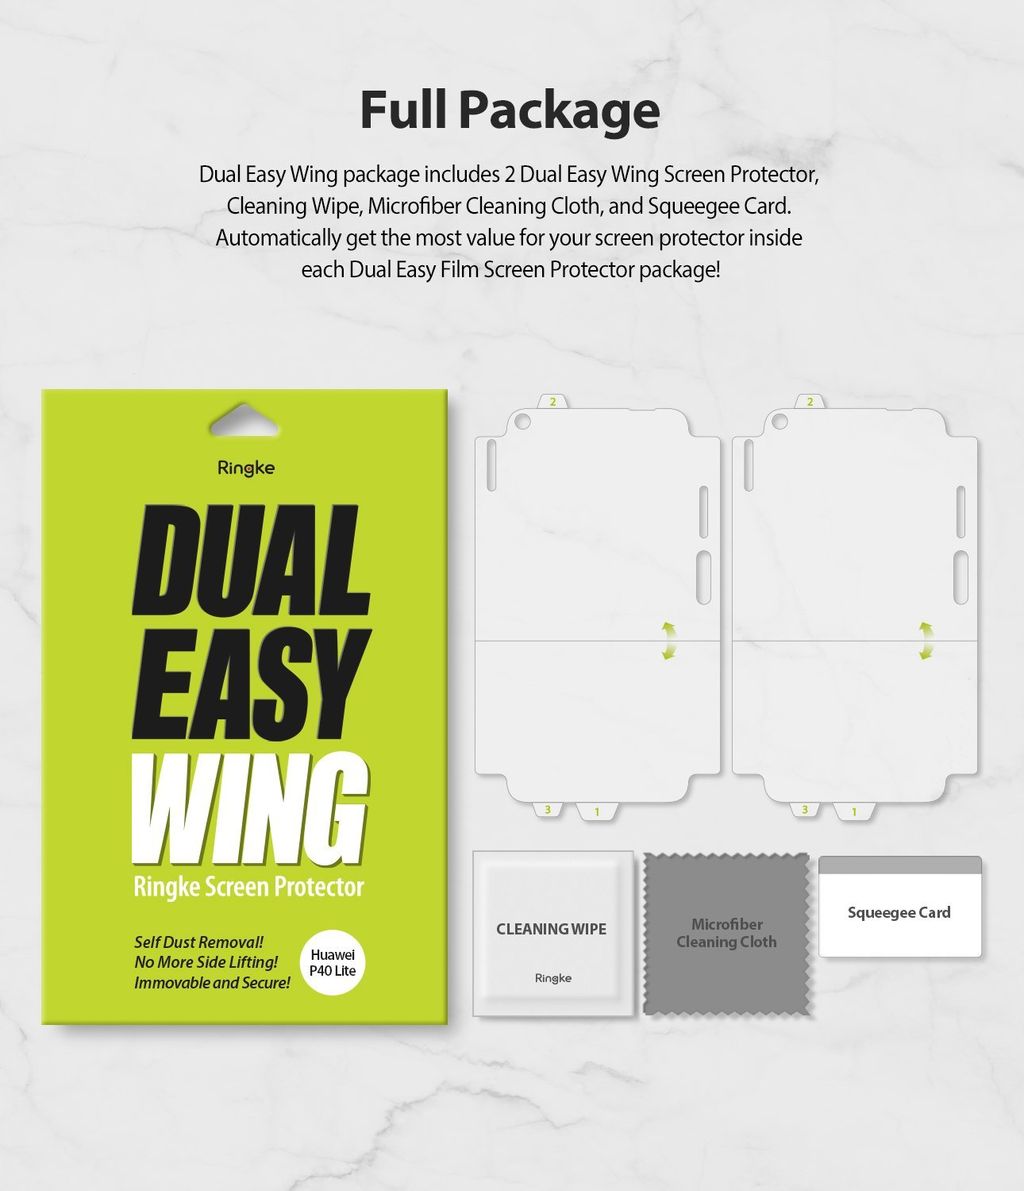 Ringke_Dual_Easy_Wing_P40_Lite_sub_thum_package_2048x.jpg